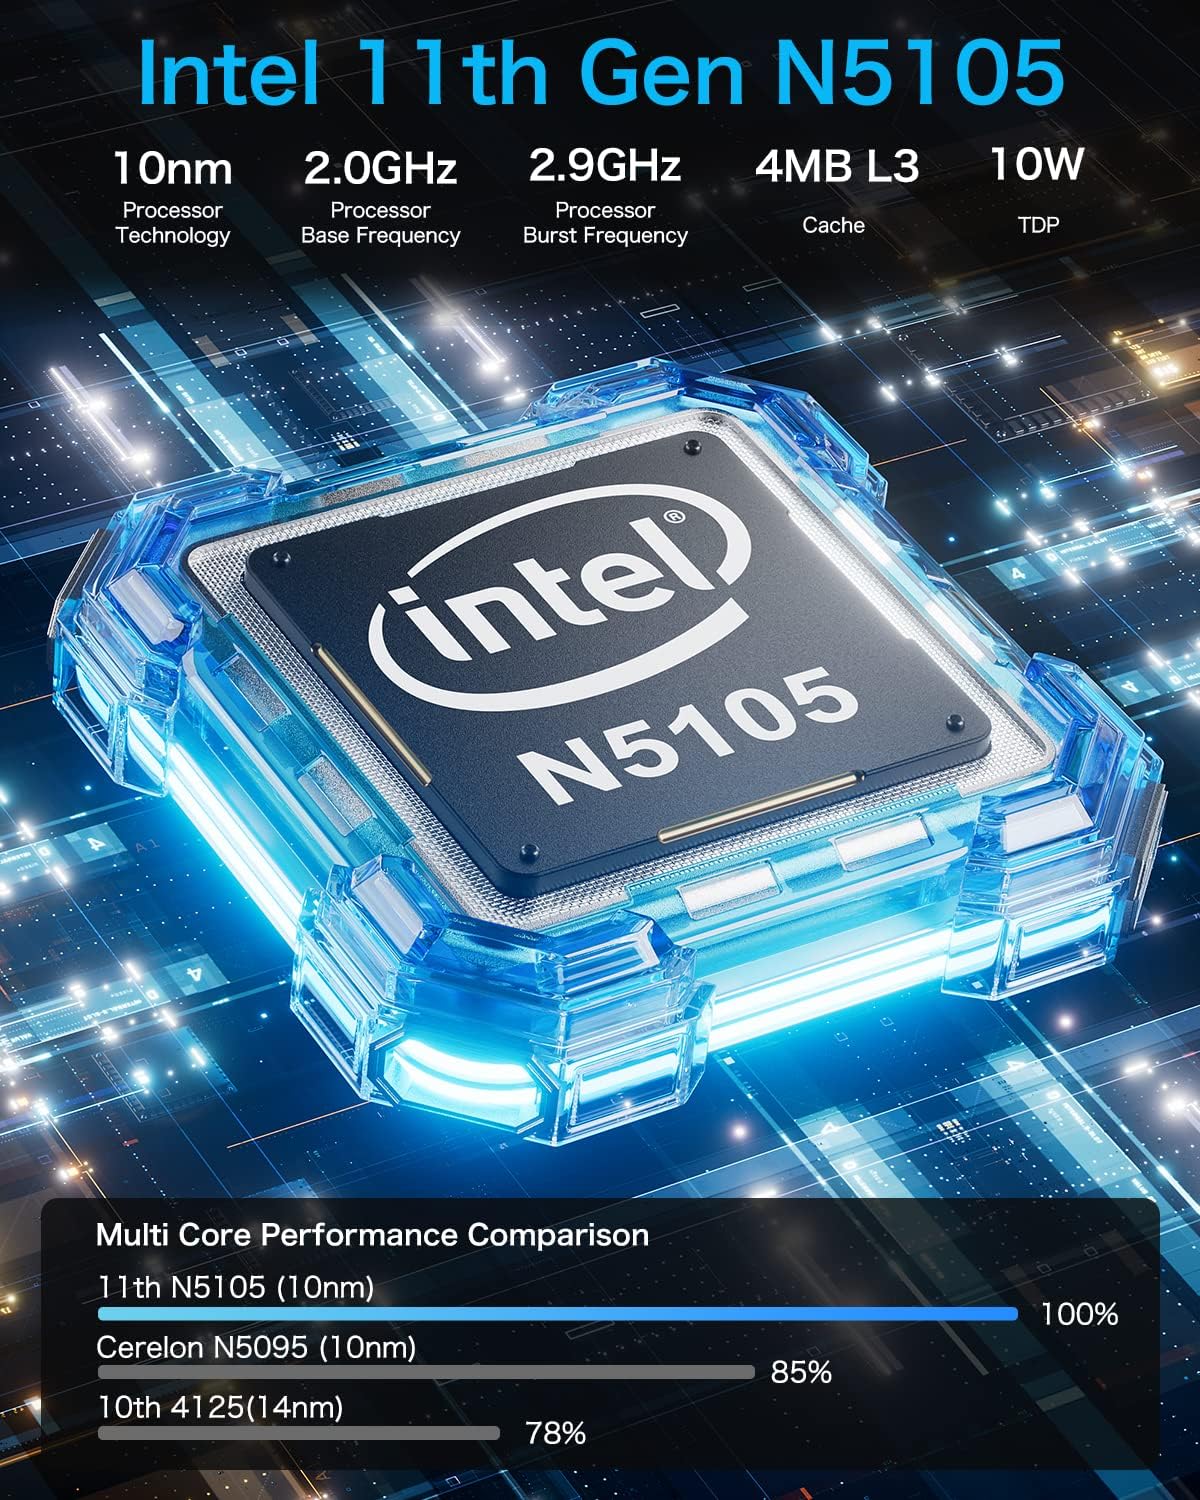 Intel 11th Gen N5105 Mini PC Review - Mini PC Reviewer